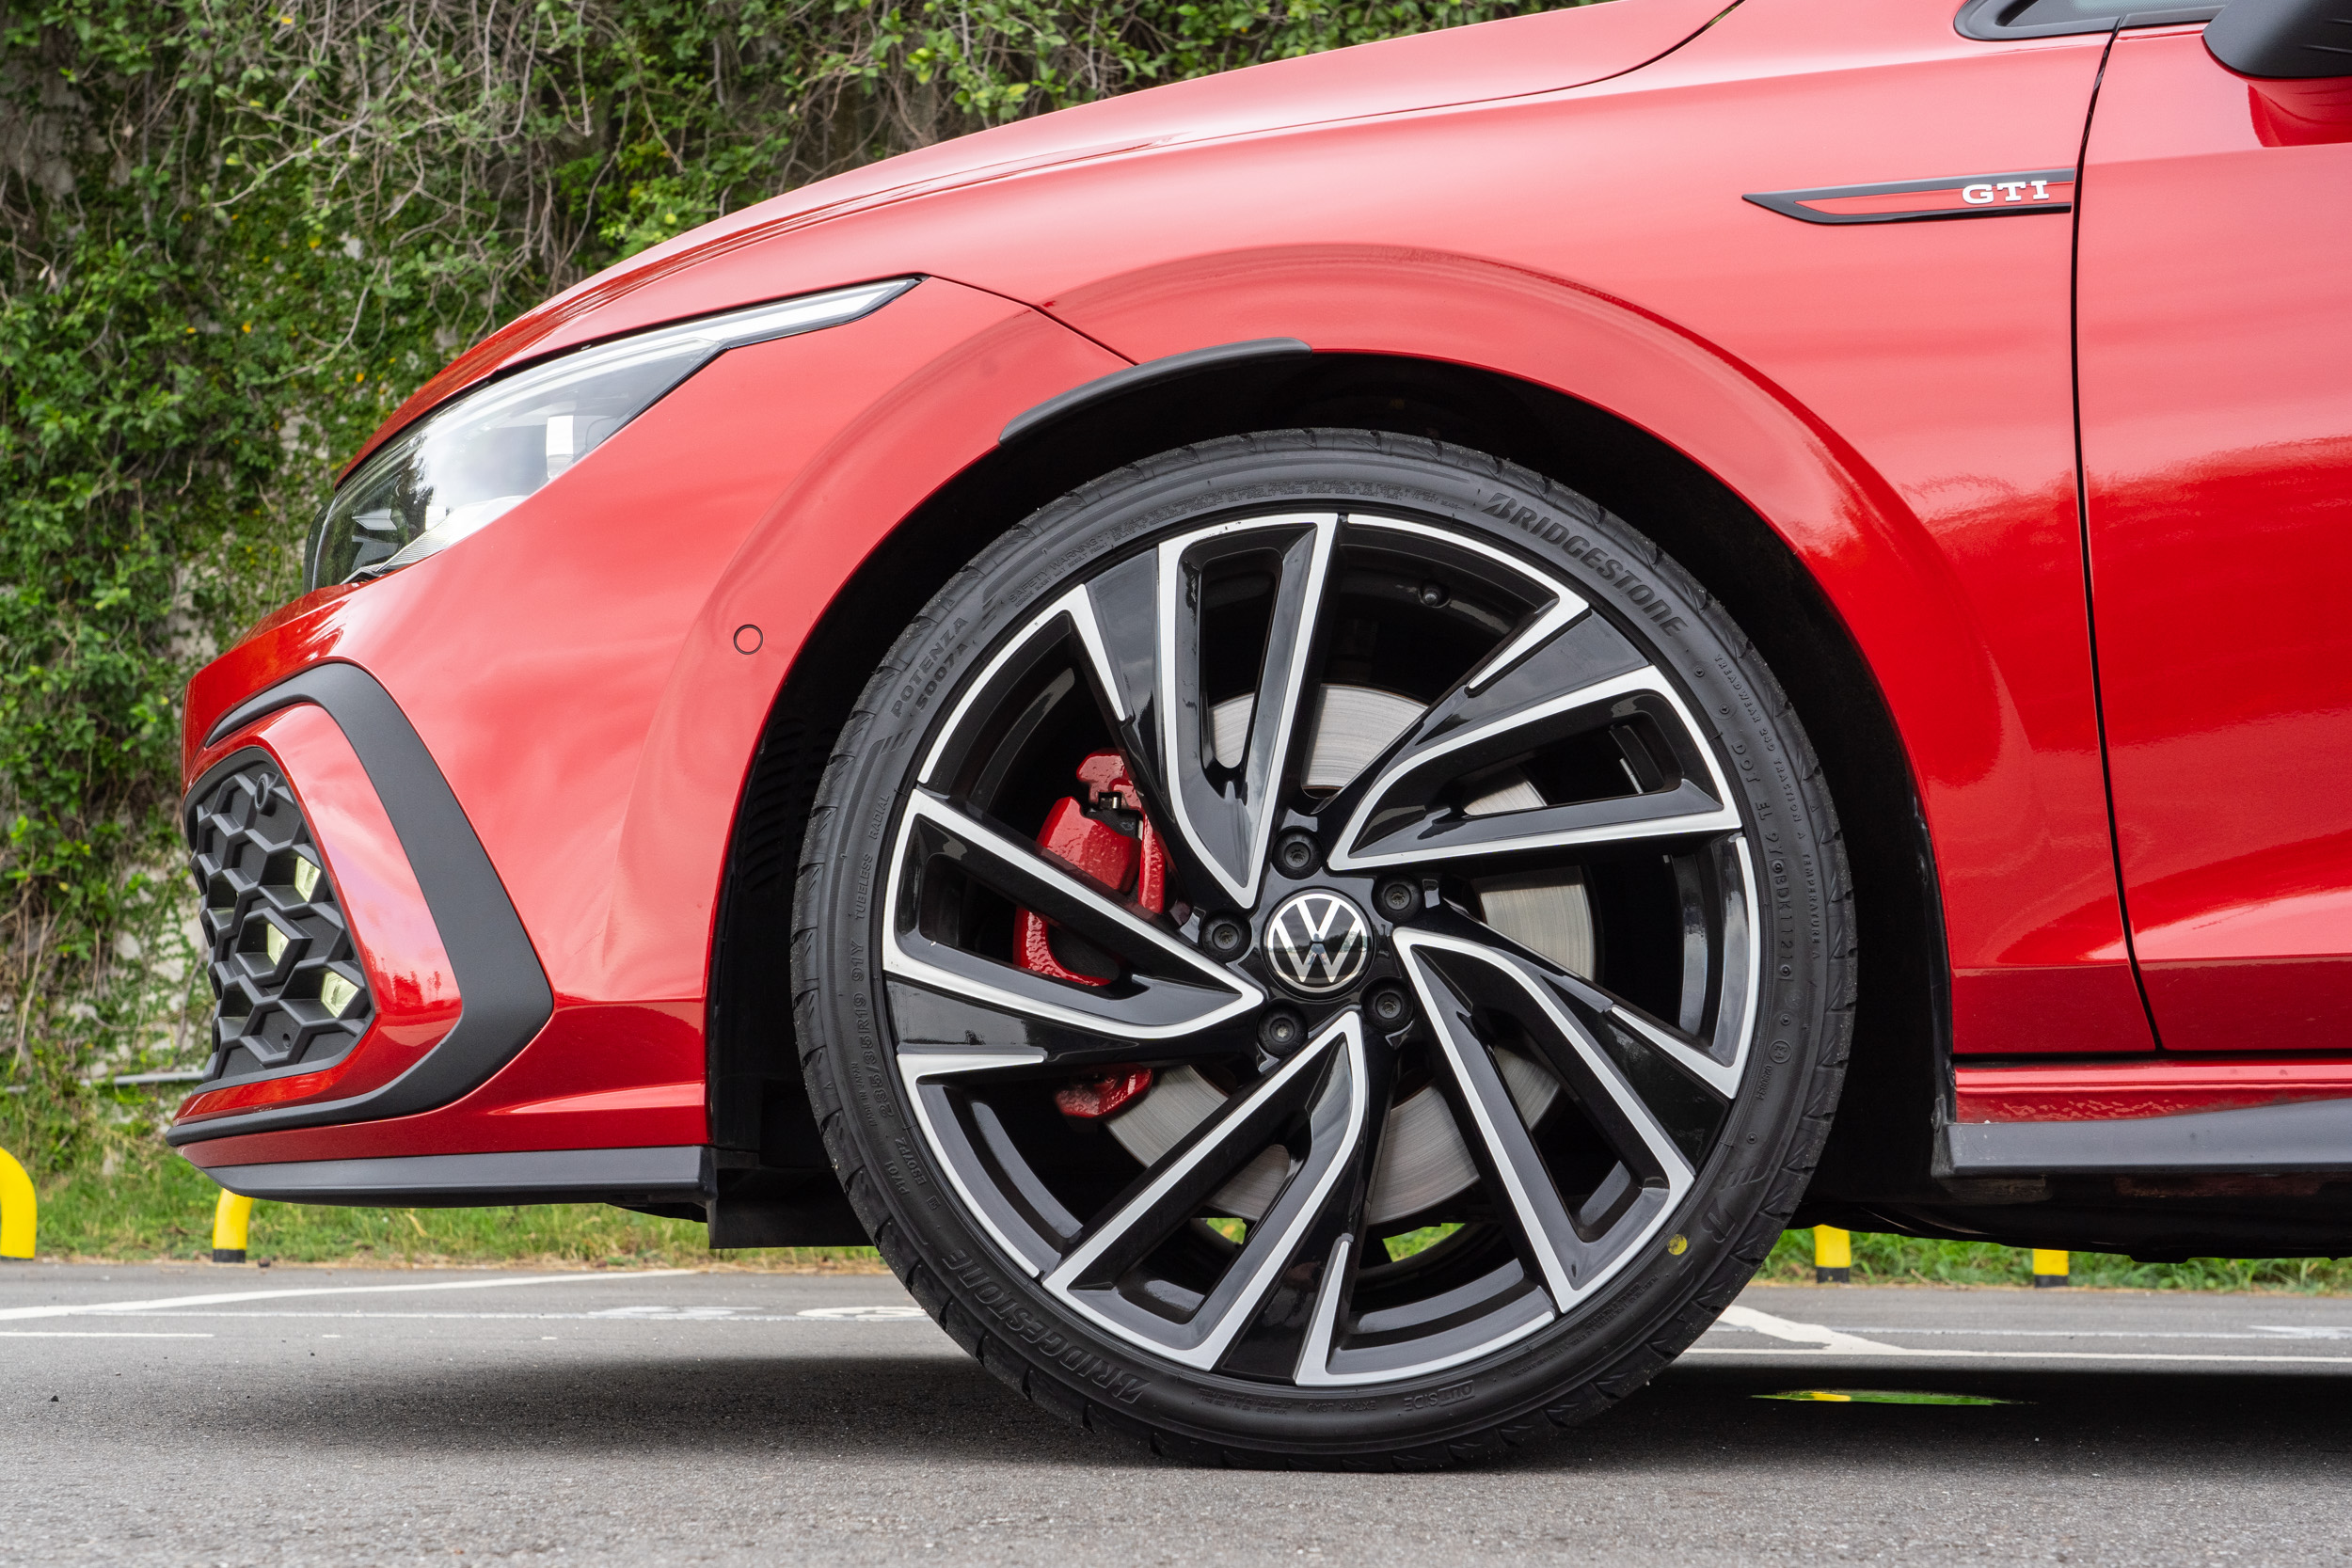 配備 19 吋 Adelaide 式樣輪圈，輪胎規格為 235/35R19，並有專屬高性能紅色煞車卡鉗。